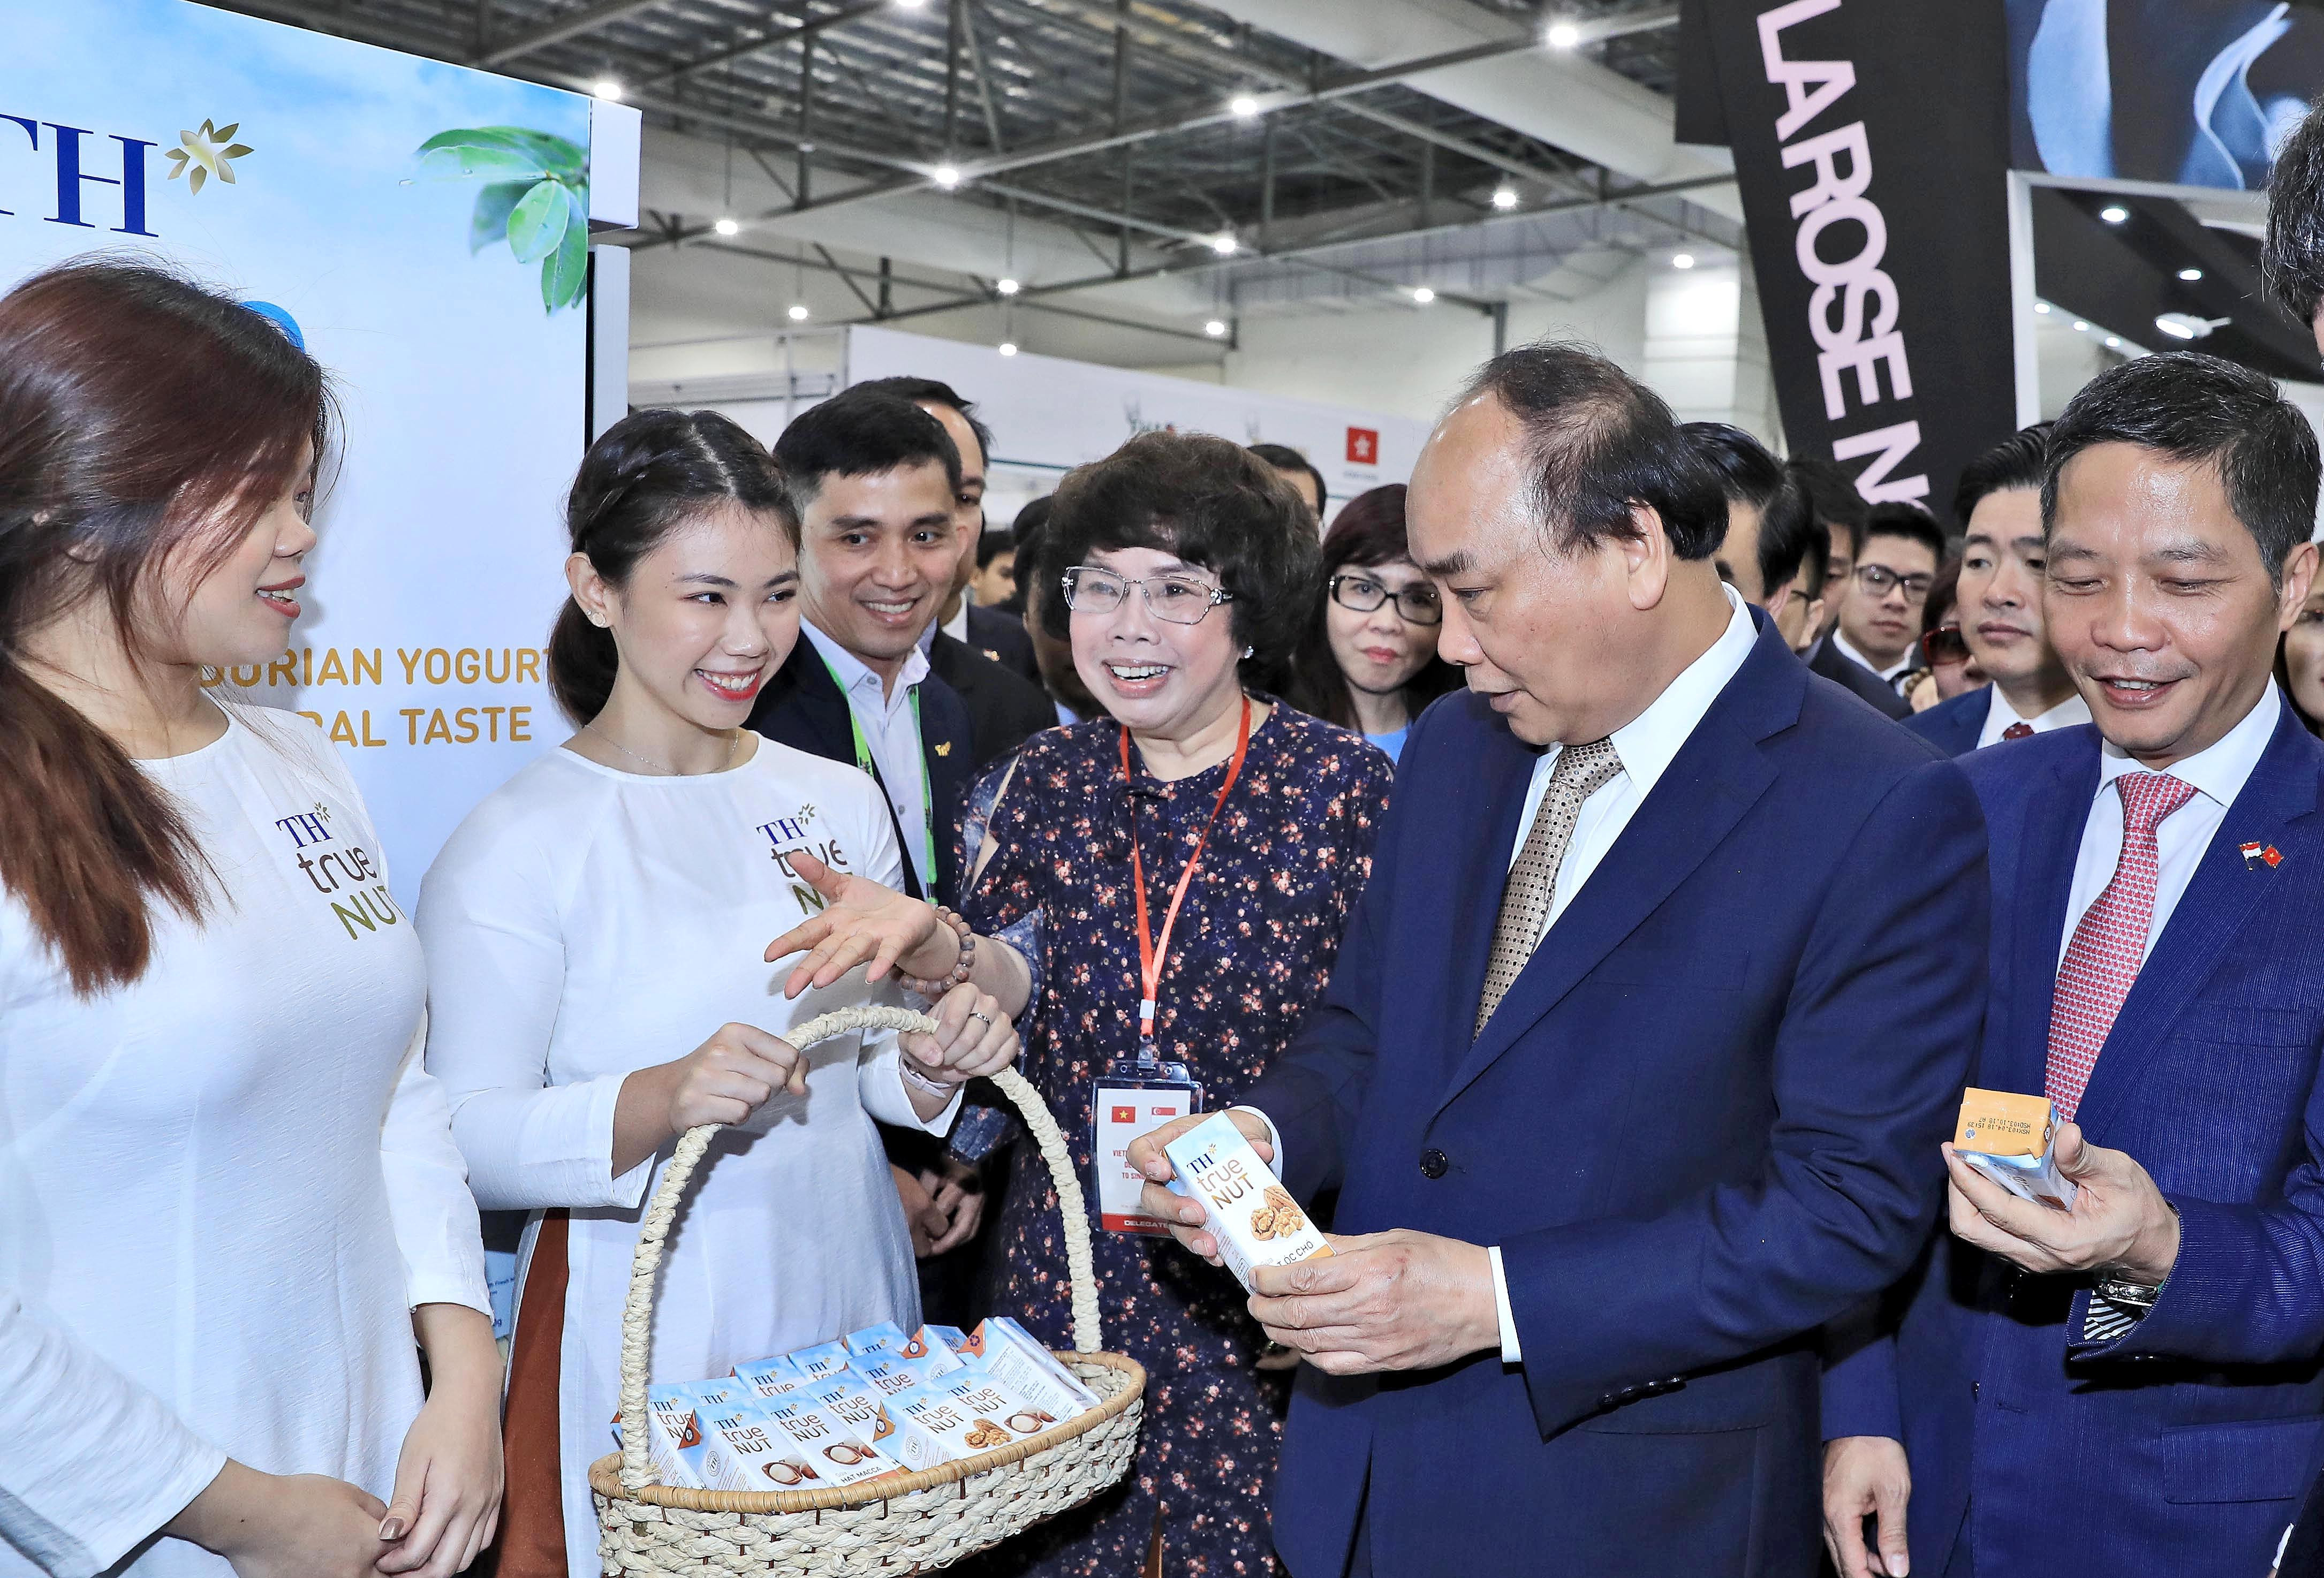 Thủ tướng Nguyễn Xuân Phúc nghe giới thiệu về sản phẩm của Tập đoàn TH. Ảnh: P.V